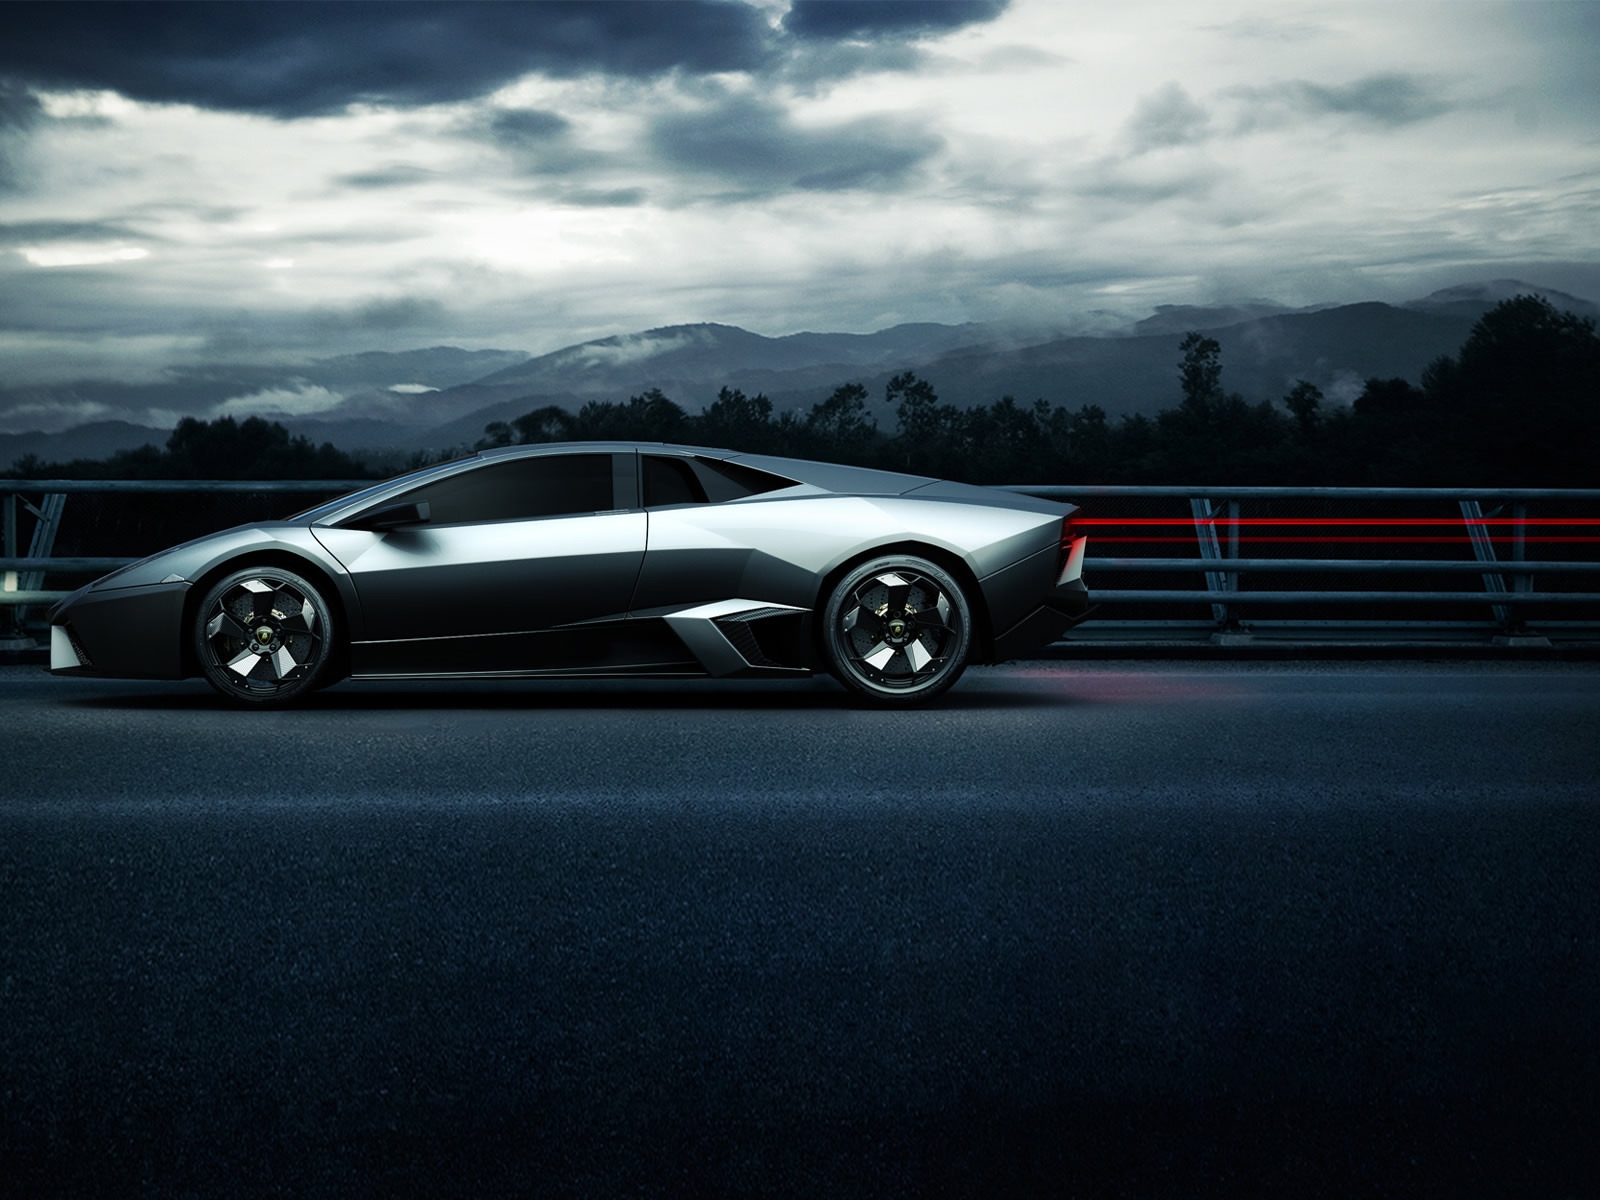 Lamborghini Sport Side Angle for 1600 x 1200 resolution